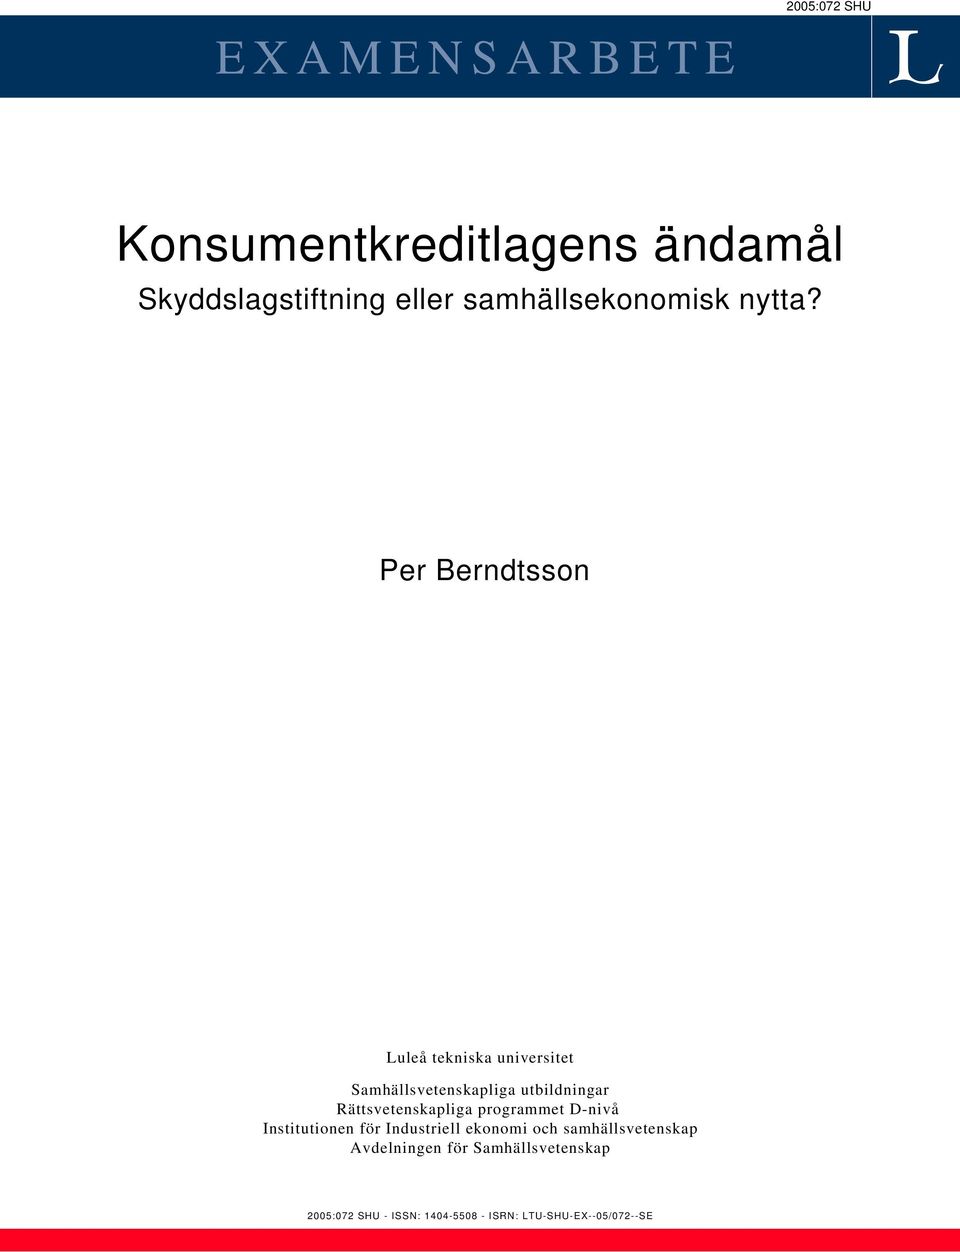 Per Berndtsson Luleå tekniska universitet Samhällsvetenskapliga utbildningar